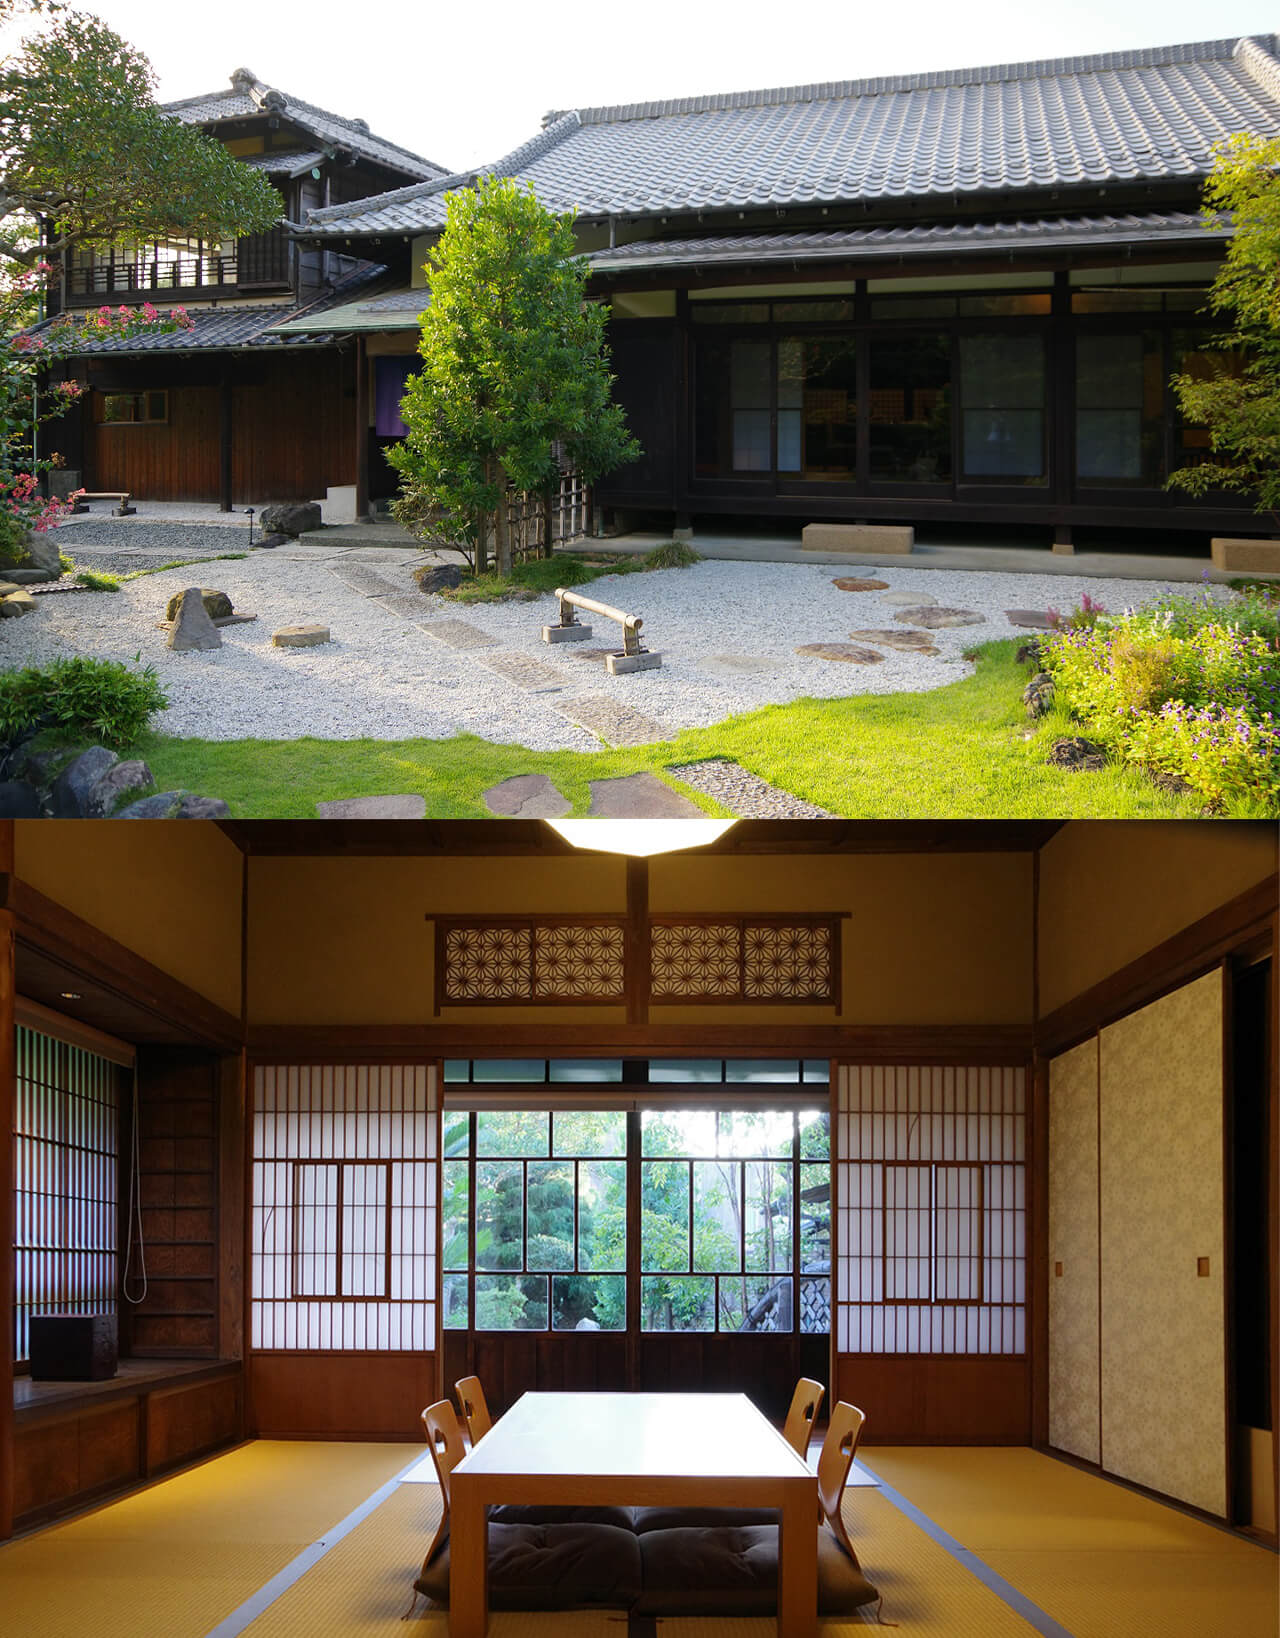 鎌倉に暮らすようにステイする愉しみ。1日2組のみのオーベルジュスタイル「鎌倉古今」